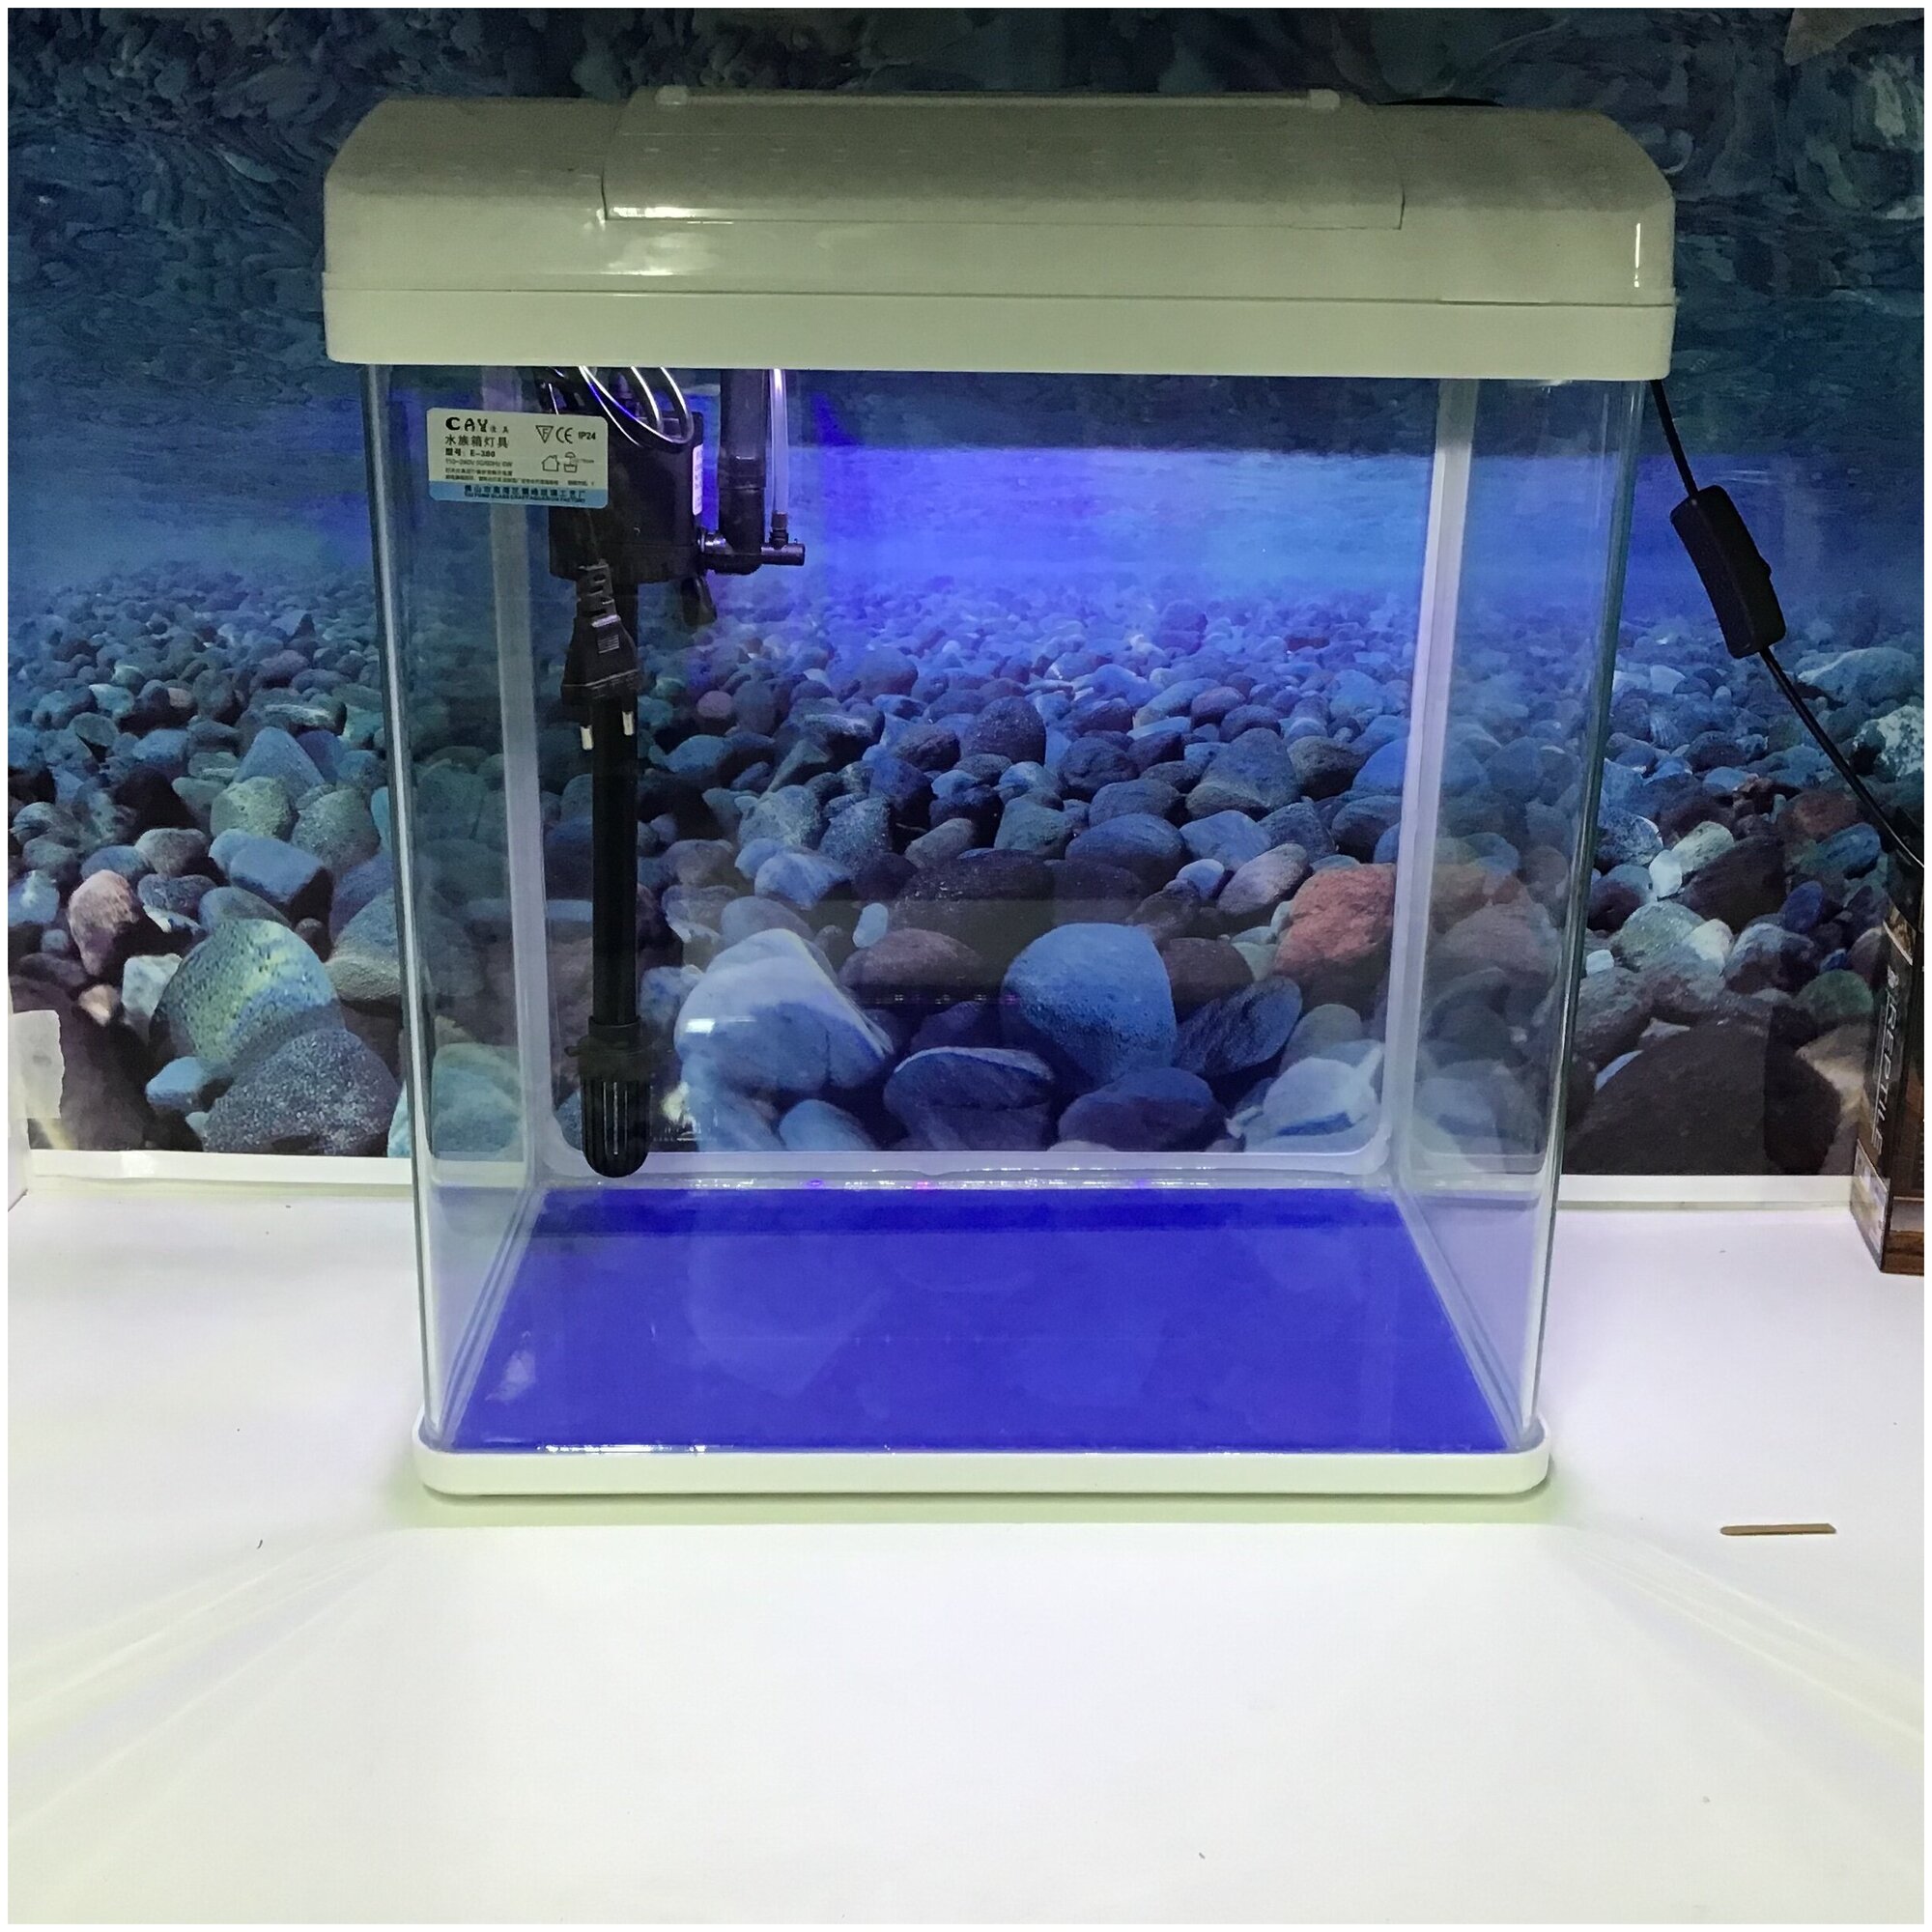 Аквариум 35 литров, аквариумный комплекс E - 380, аквариум для рыб белый с оборудованием, освещение, фильтр, наполнитель, для дома и офиса - фотография № 5